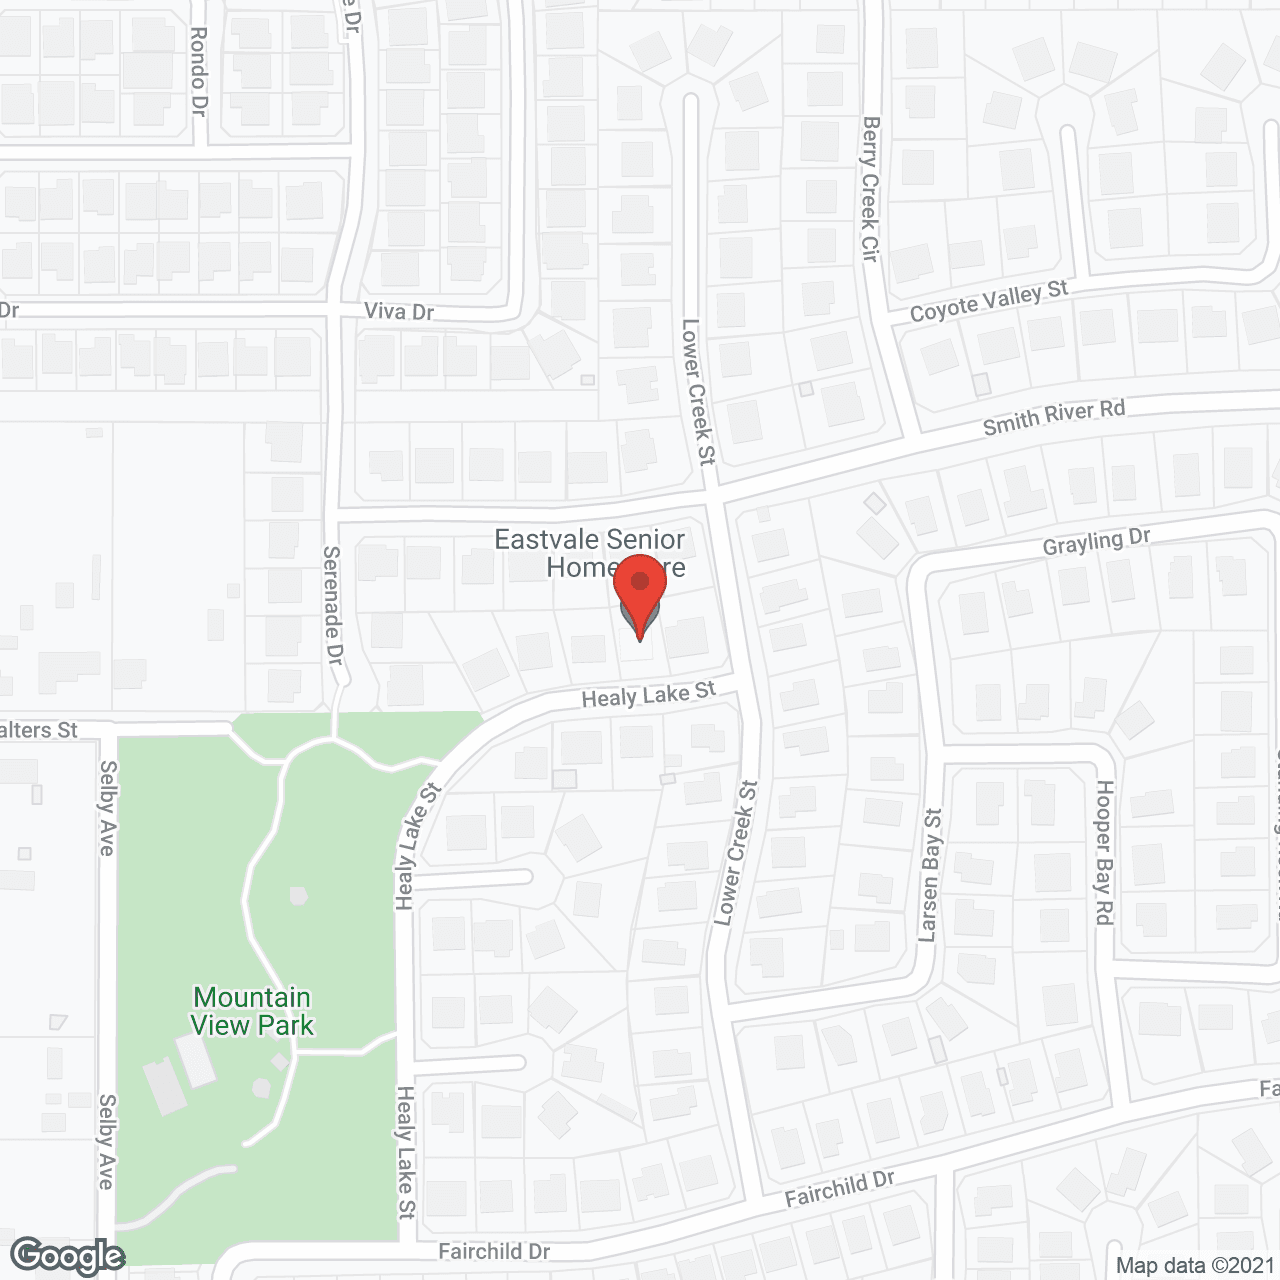 Eastvale Senior Home Care, LLC in google map